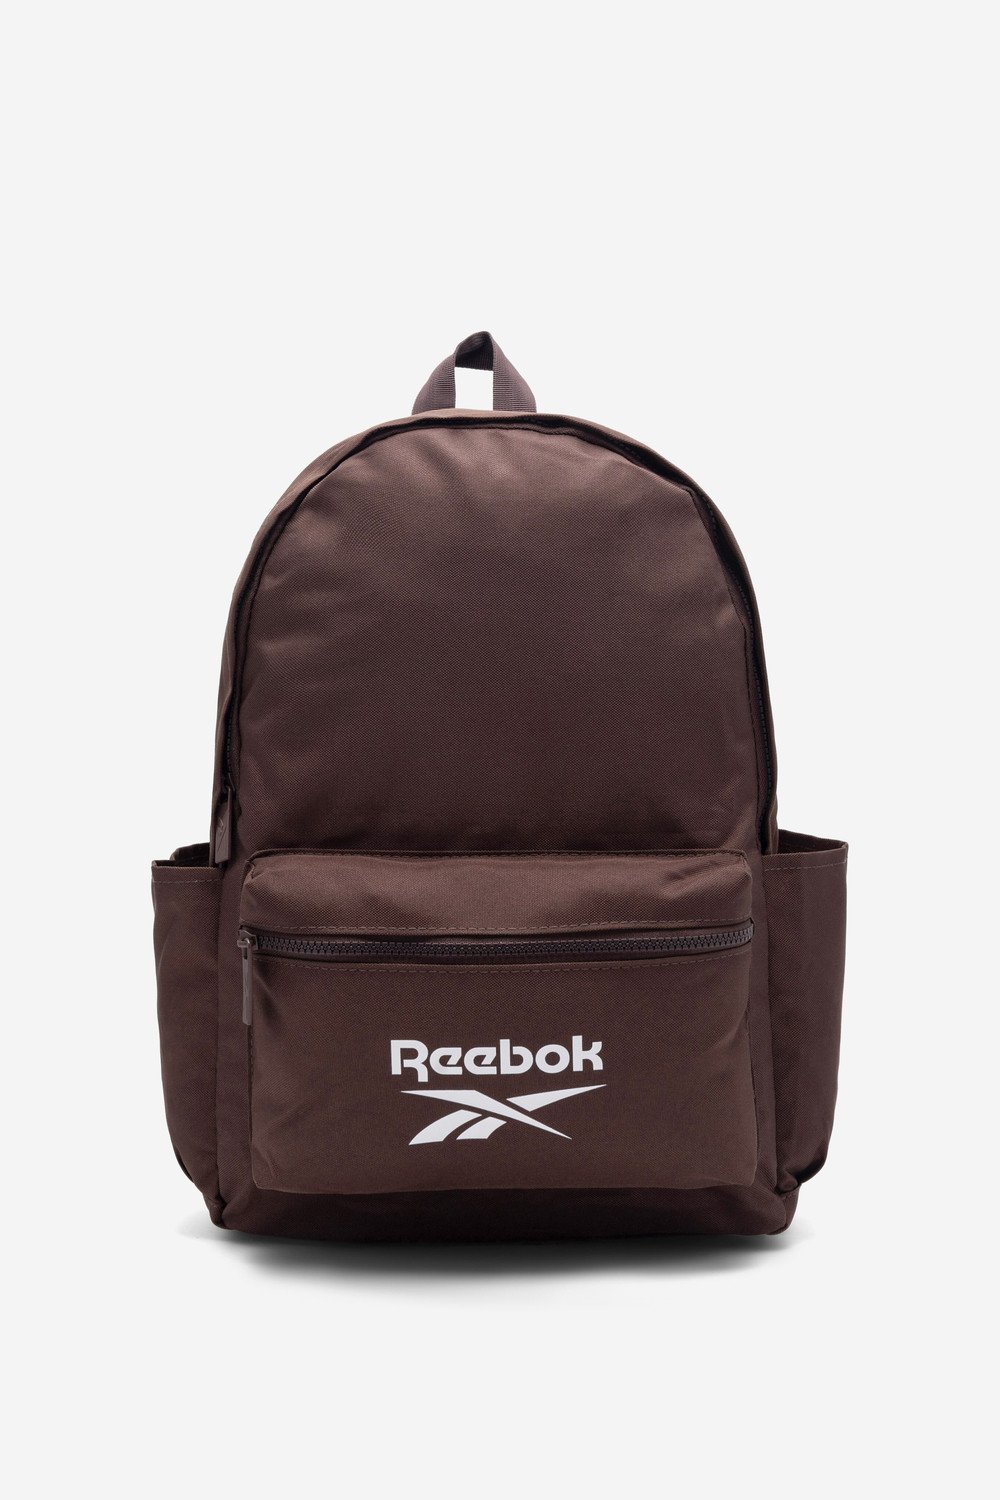 Batohy a tašky Reebok RBK-P-002-CCC